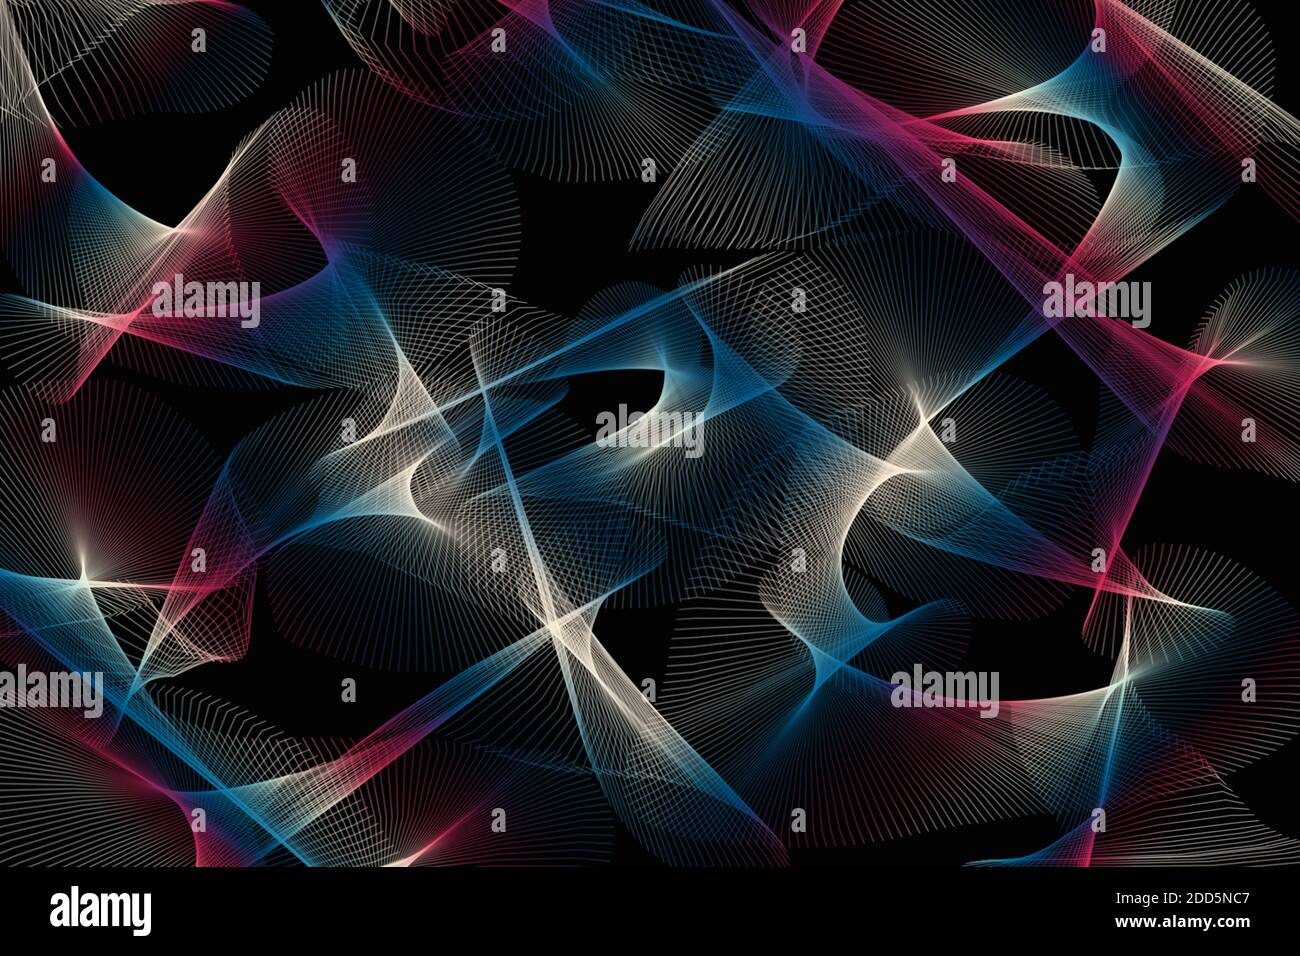 Illustrazione astratta di sfondo di linee a spirale frattale multicolore su sfondo nero. Foto Stock